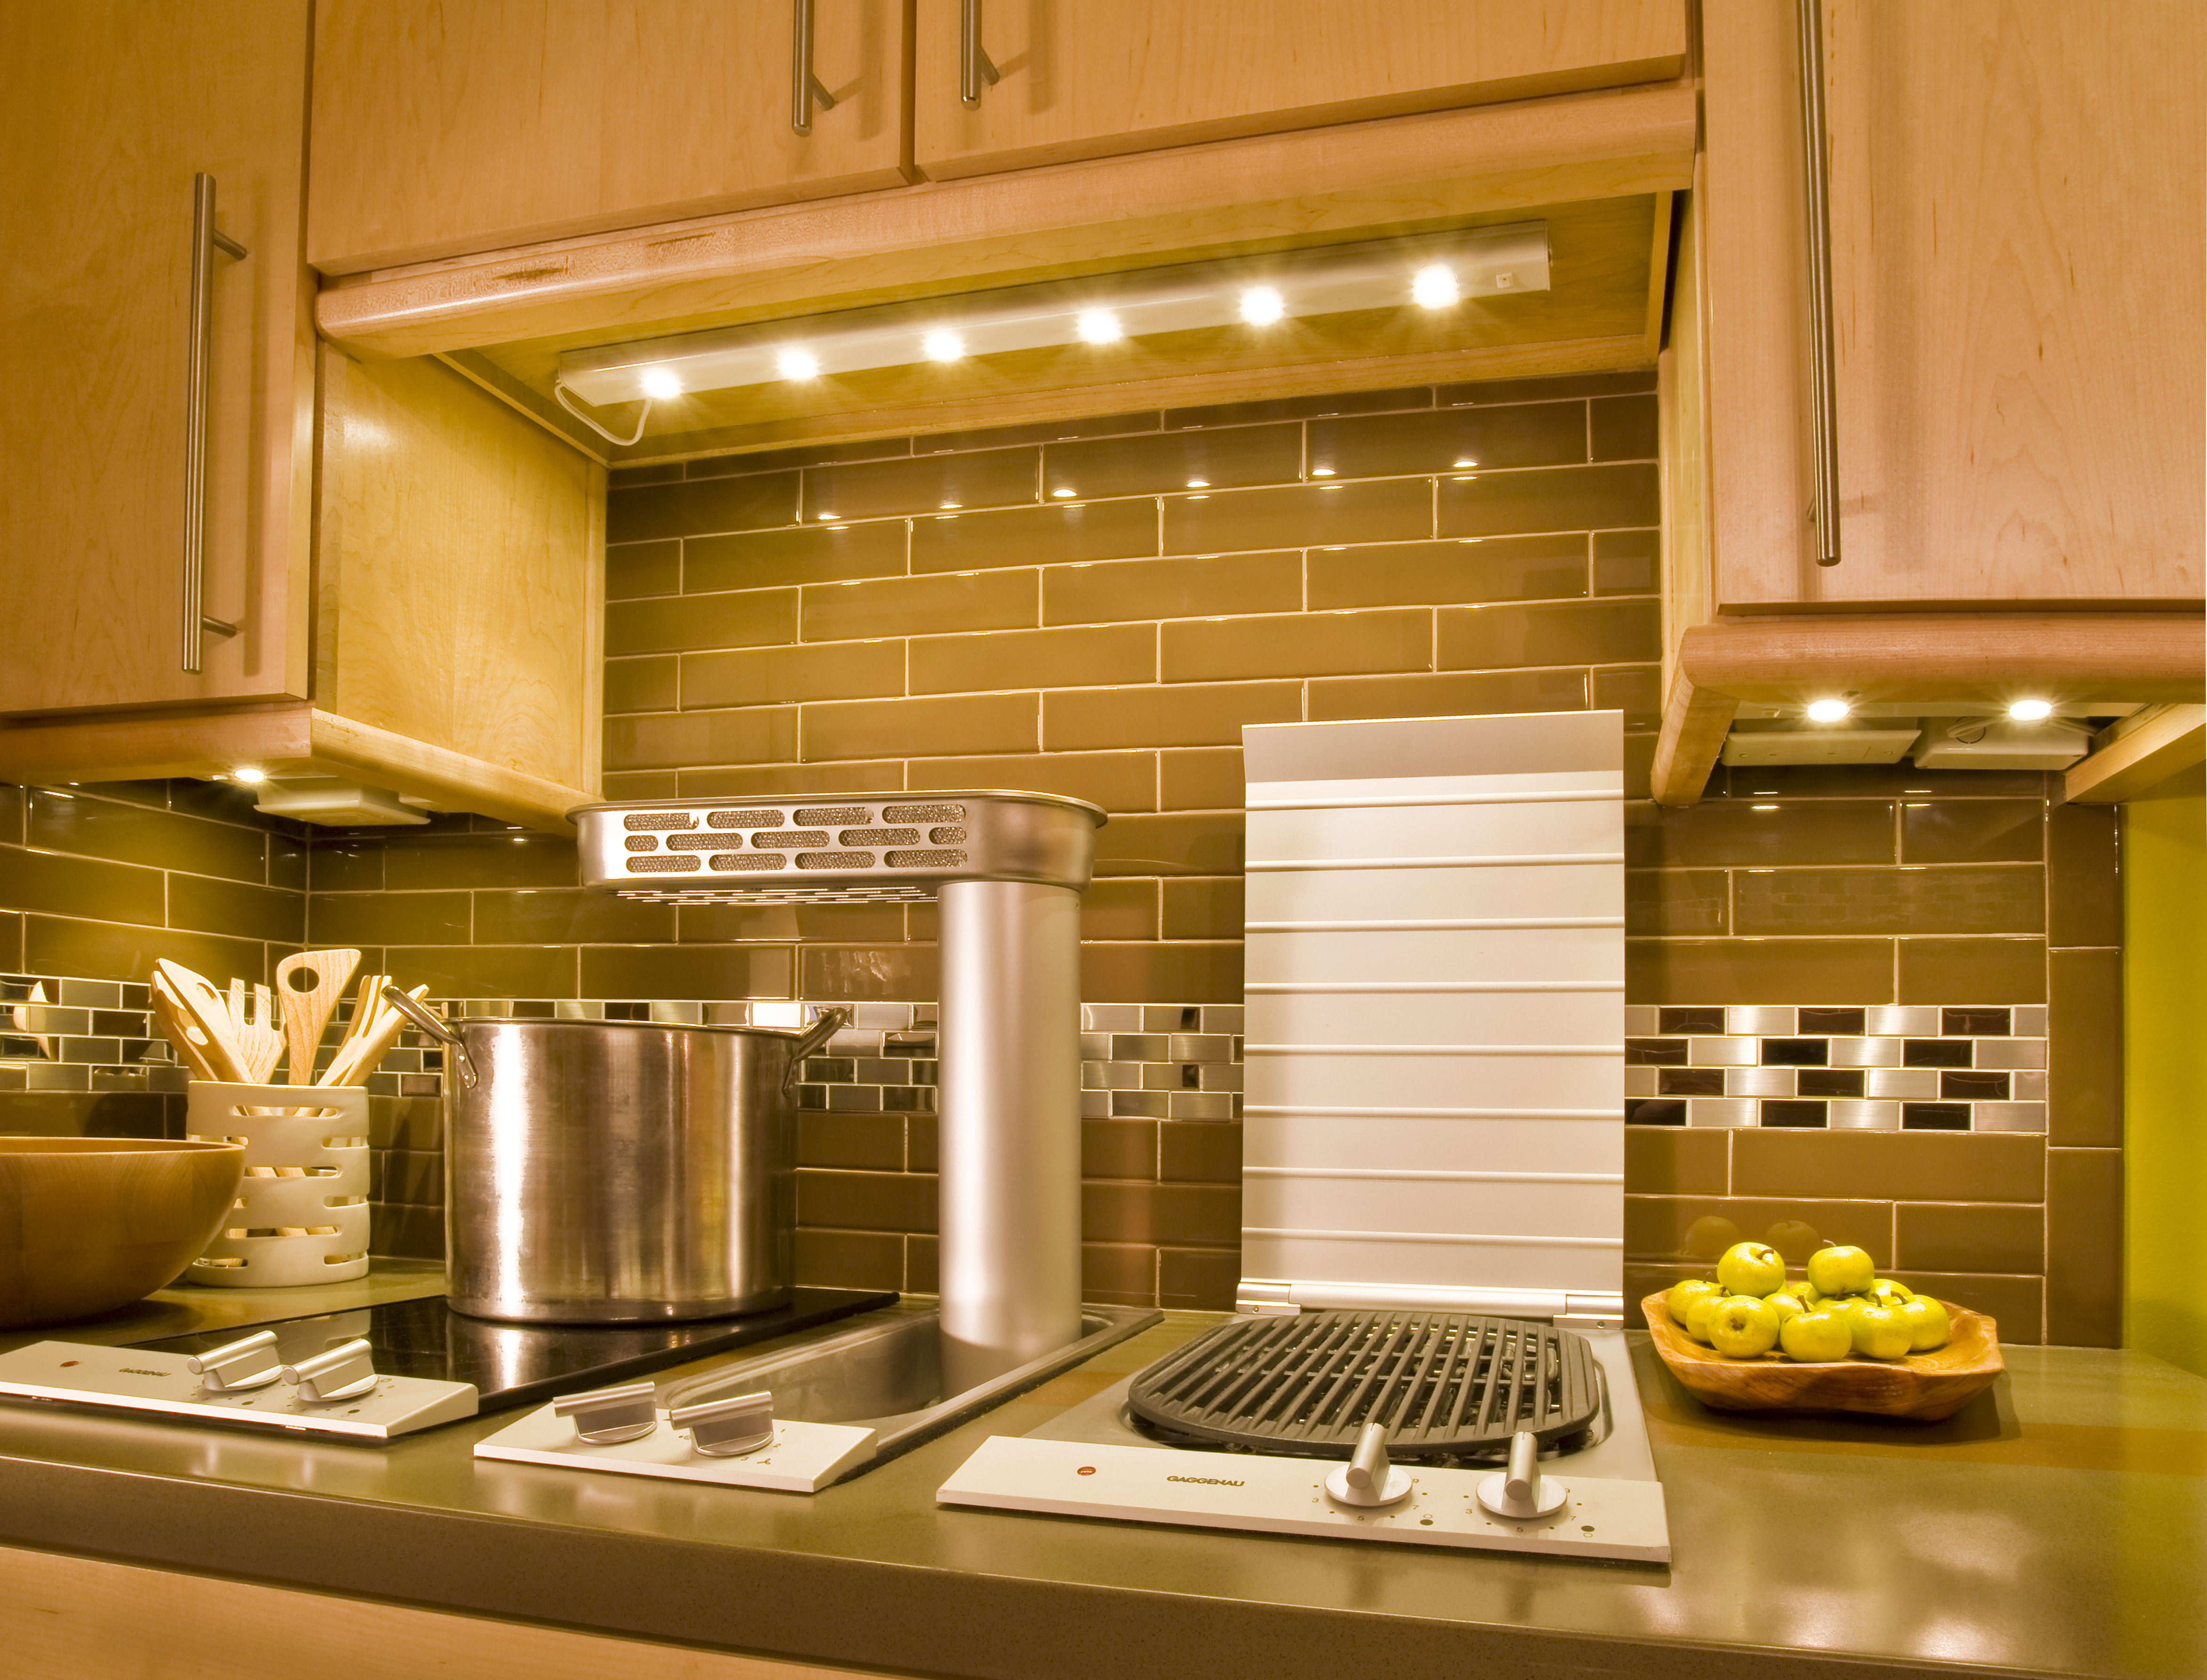 Кухня теплый свет. Освещение на кухне. Светильник на кухню над рабочей зоной. Светильники для кухни над рабочей поверхностью. Подсветка рабочей зоны на кухне.